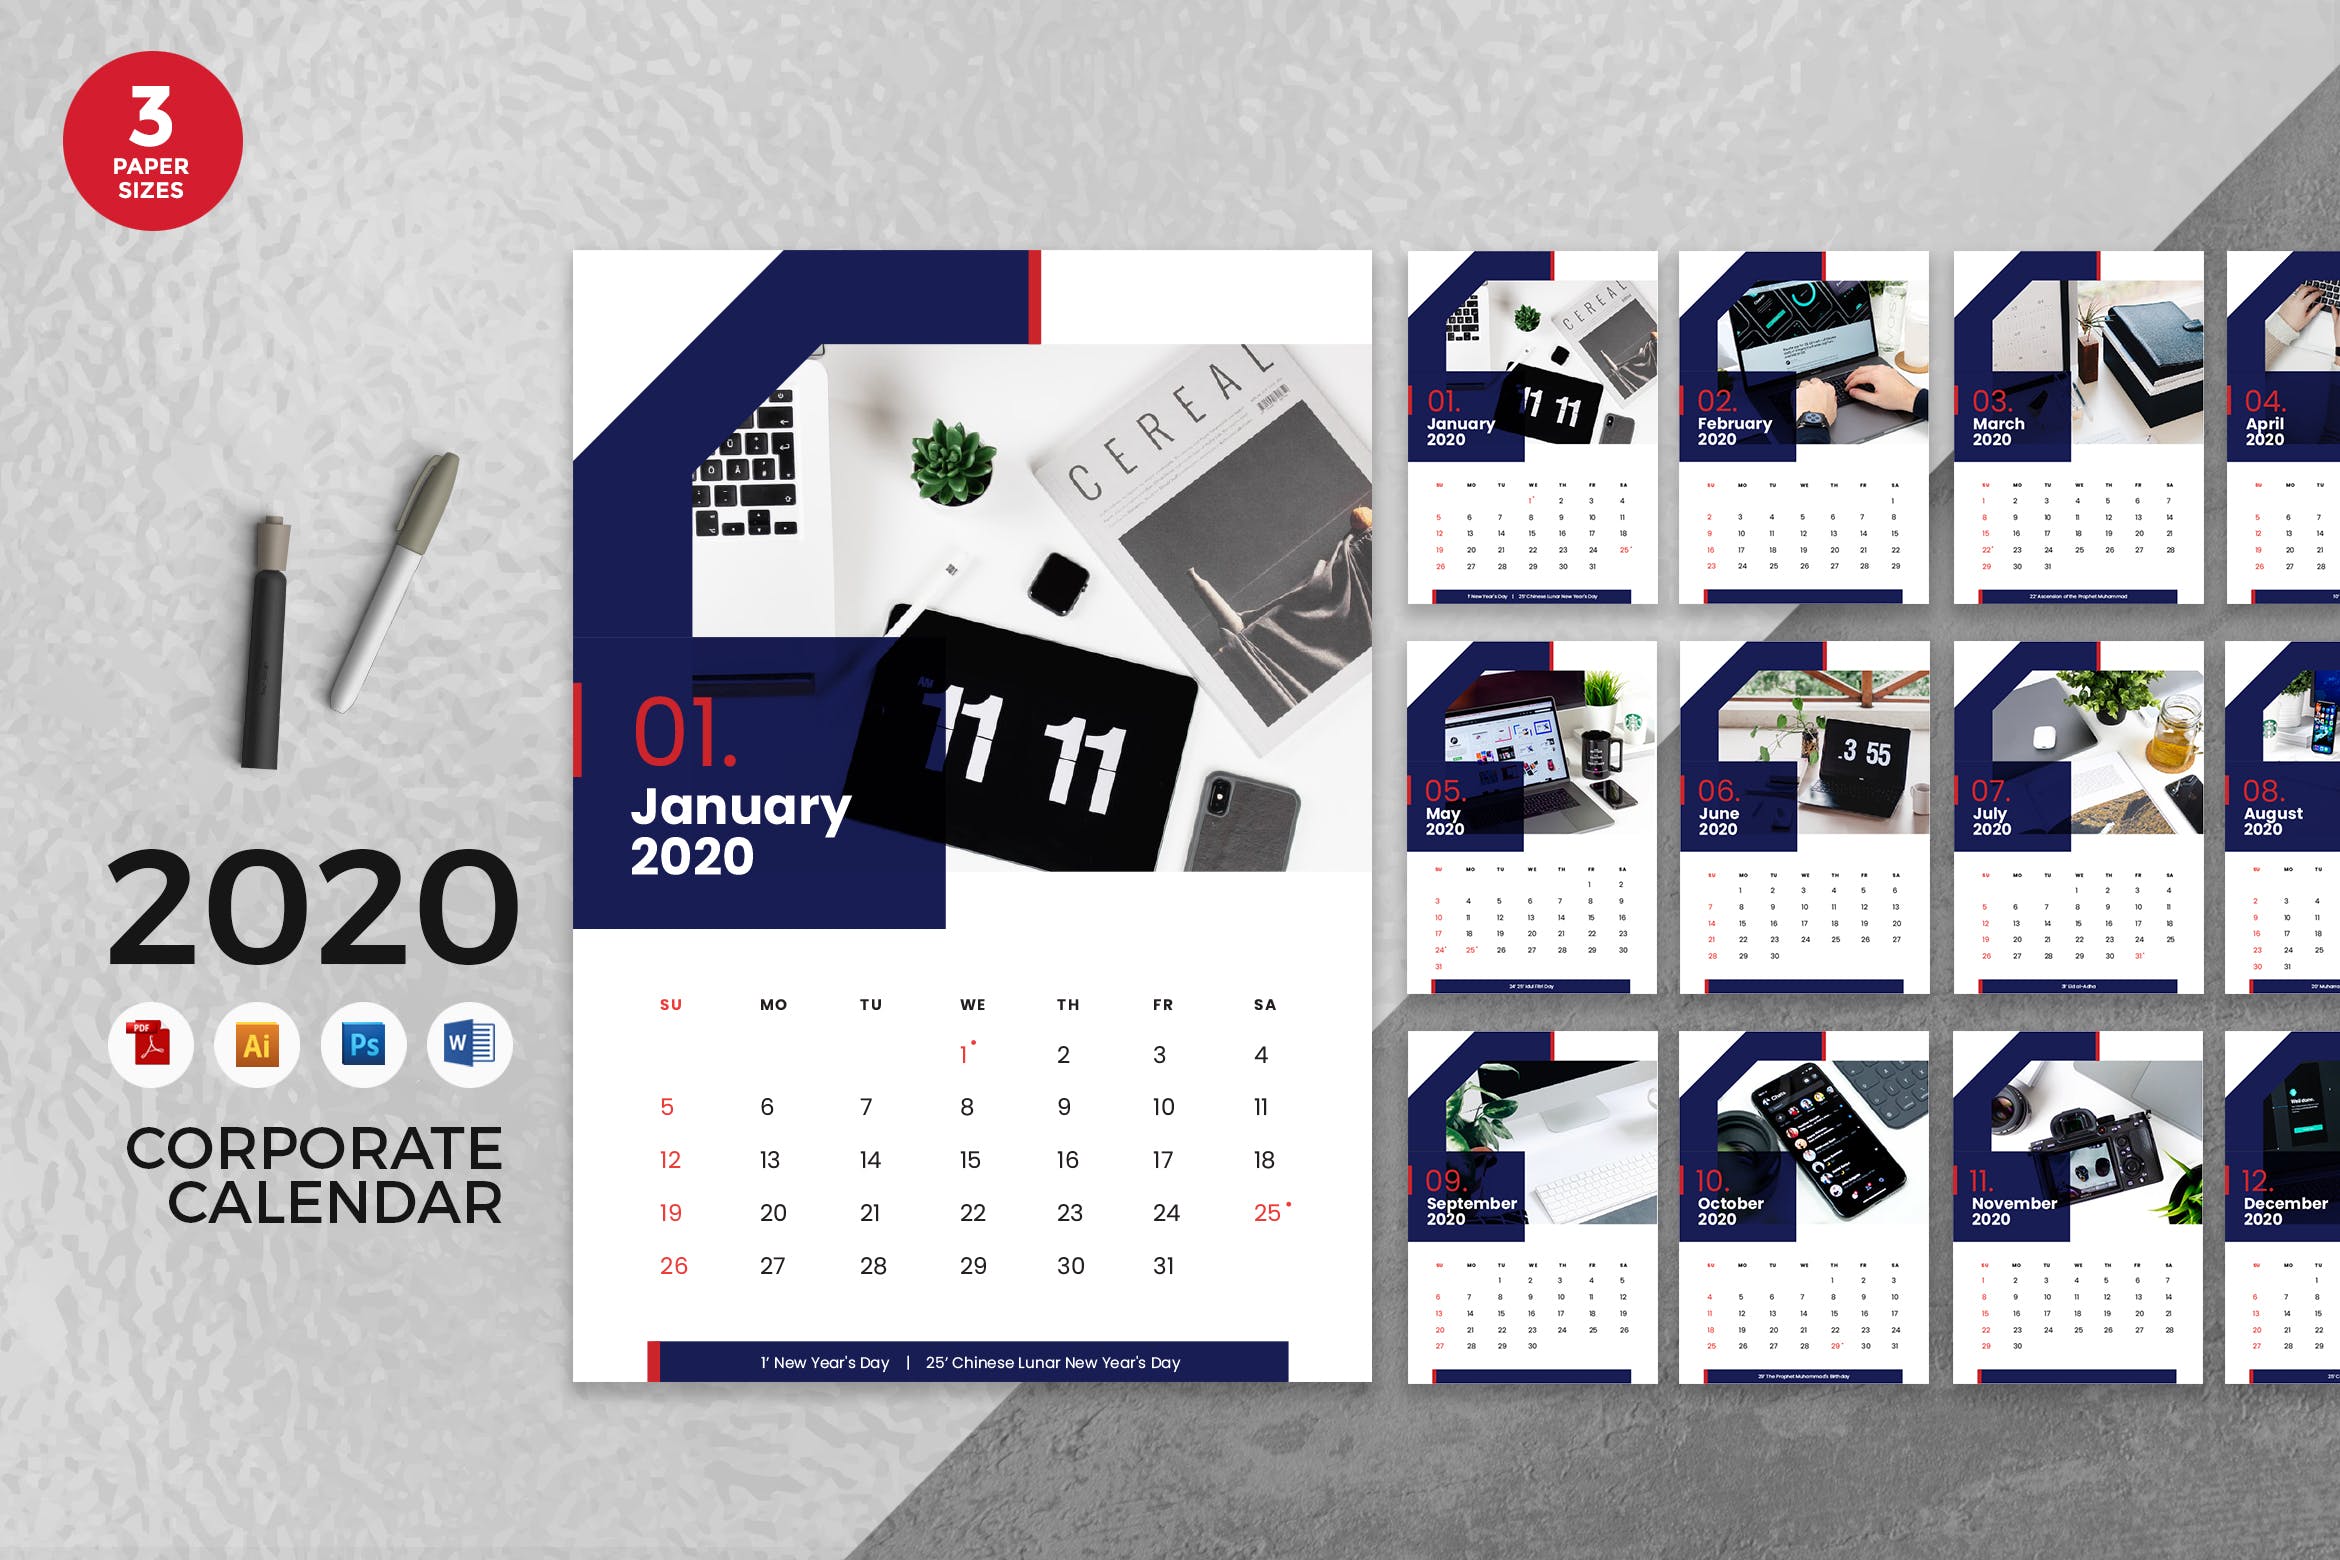 企业定制设计2020年日历表设计模板 Corporate Business 2020 Calendar – AI, DOC, PSD插图